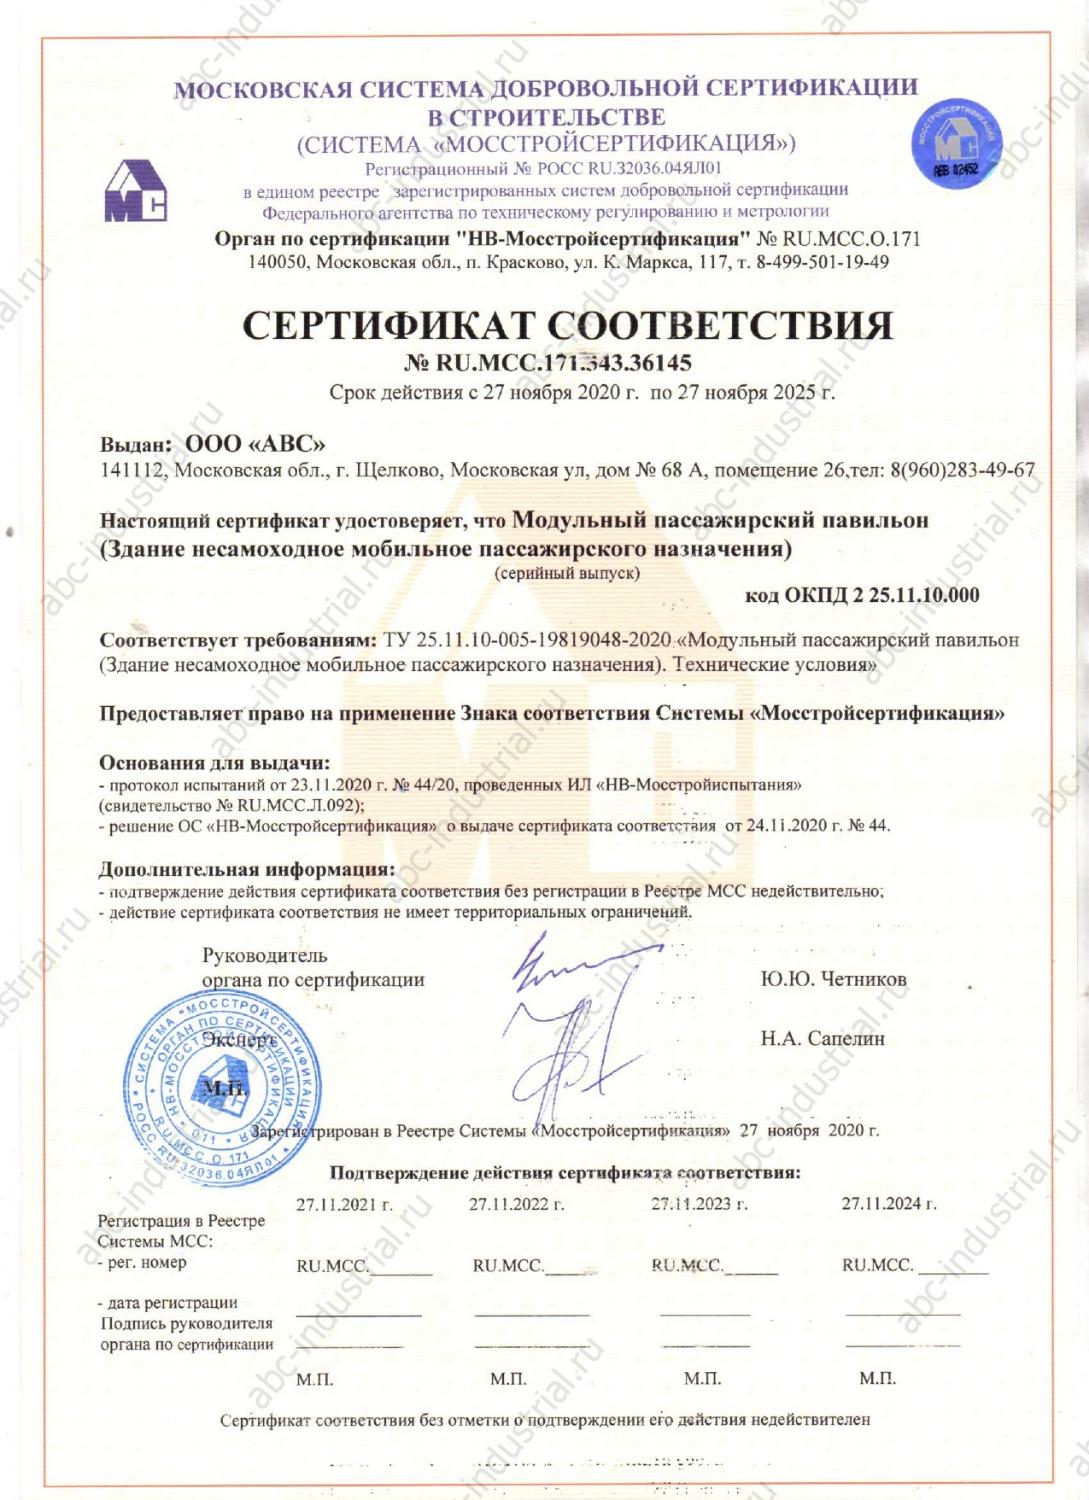 Сертификат соответствия на модульный пассажирский павильон